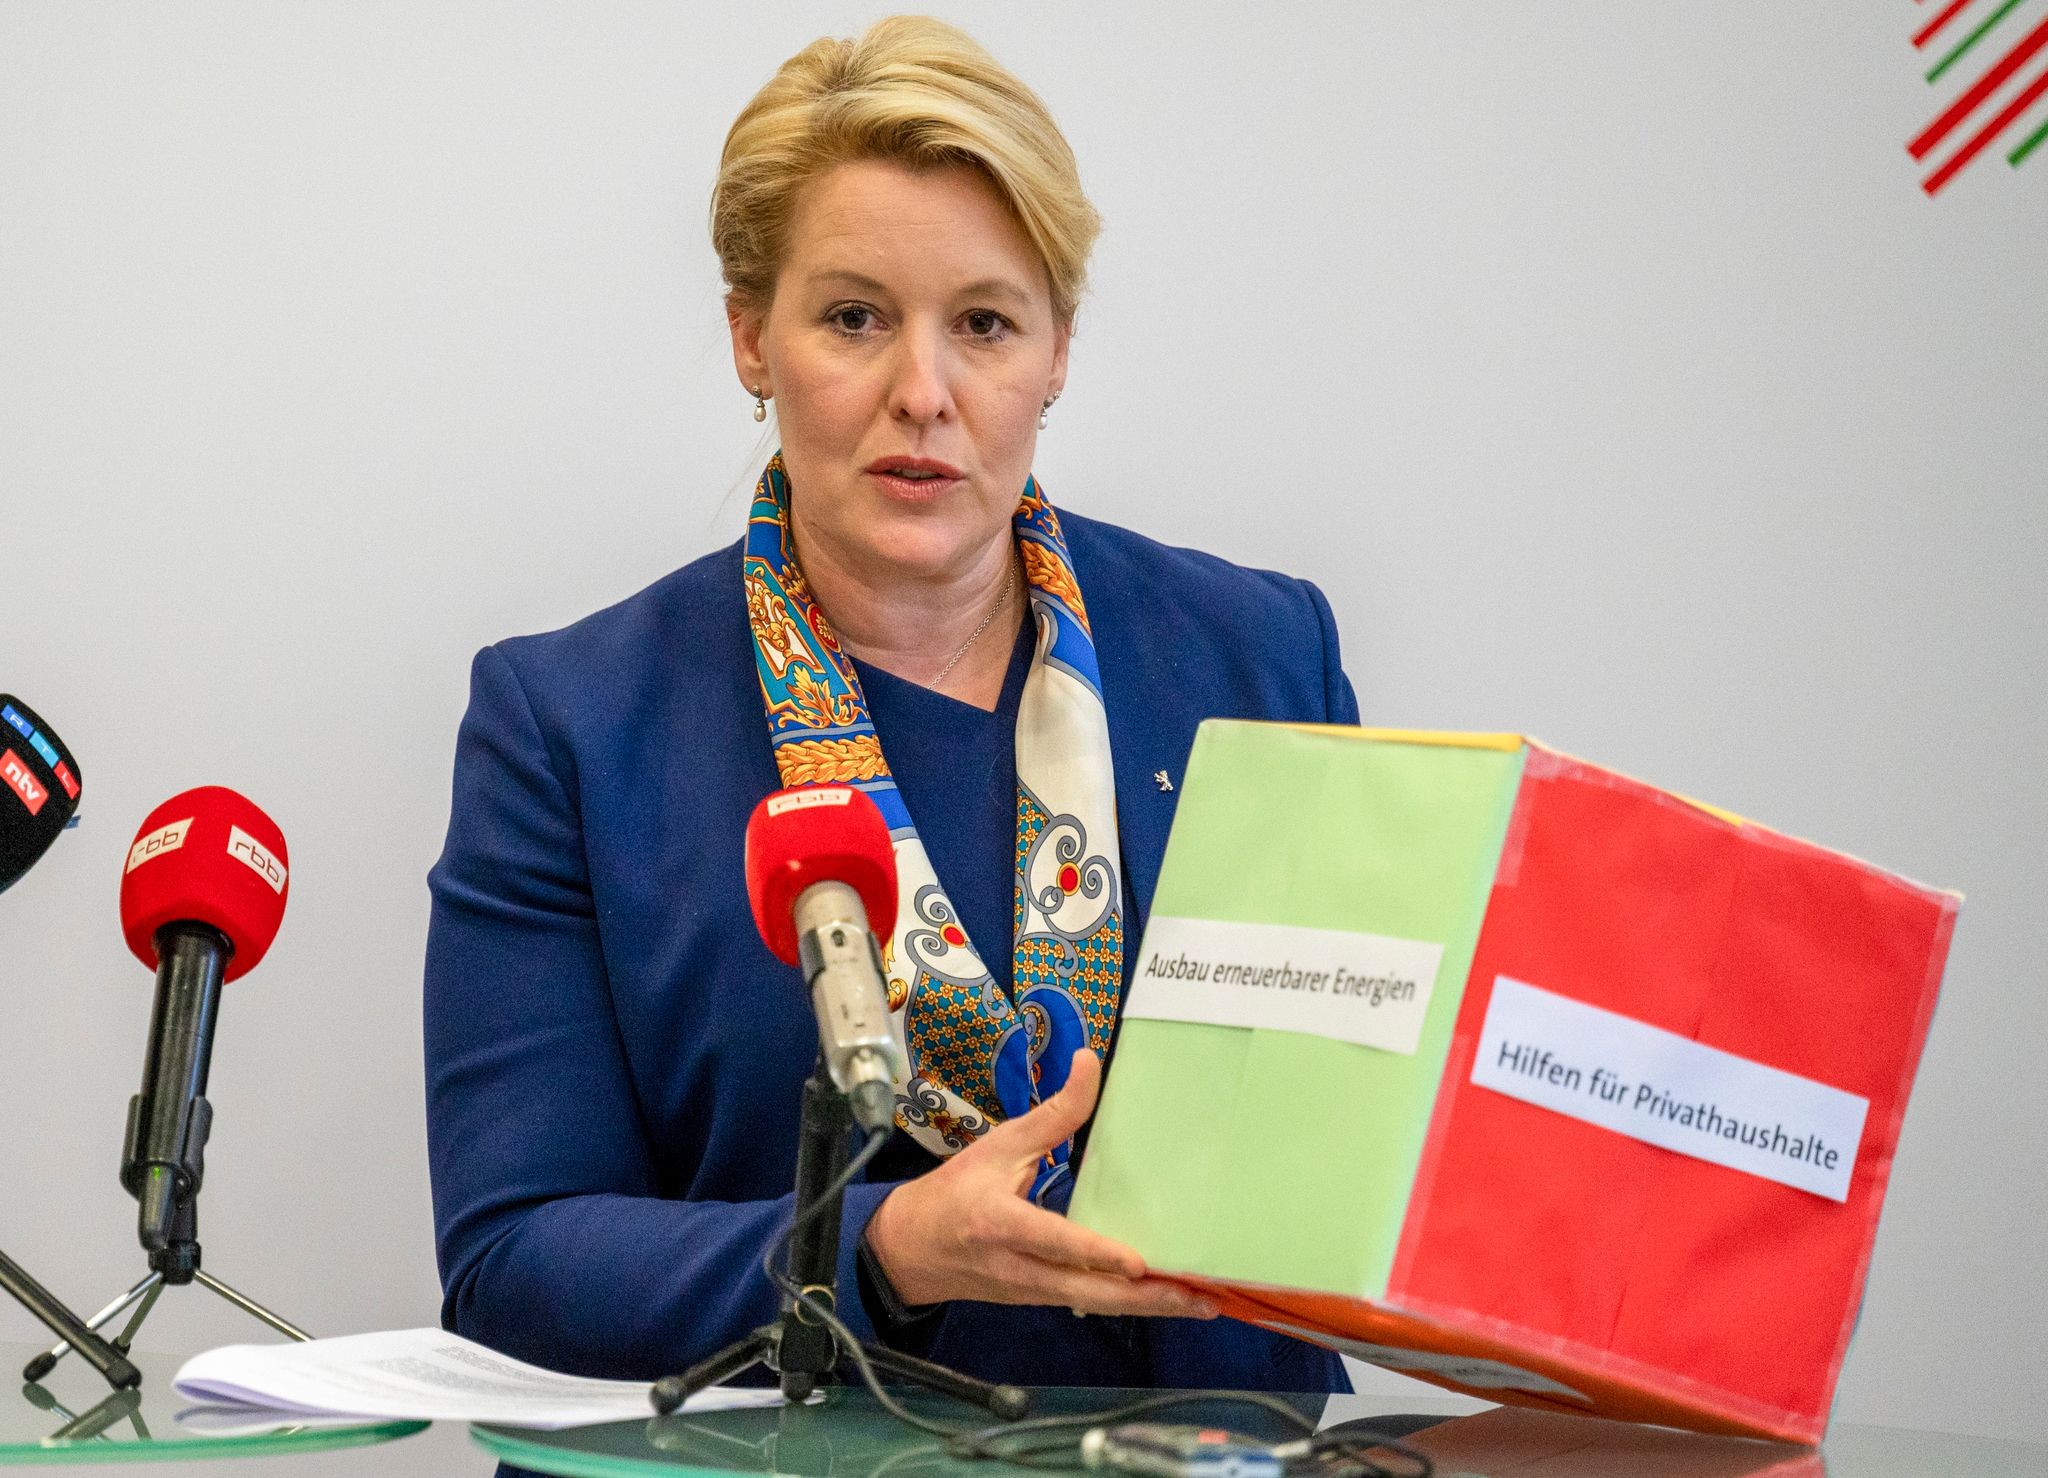 Franziska Giffey (SPD), Berlins Regierende Bürgermeisterin, hält ein symbolisches Entlastungspaket.